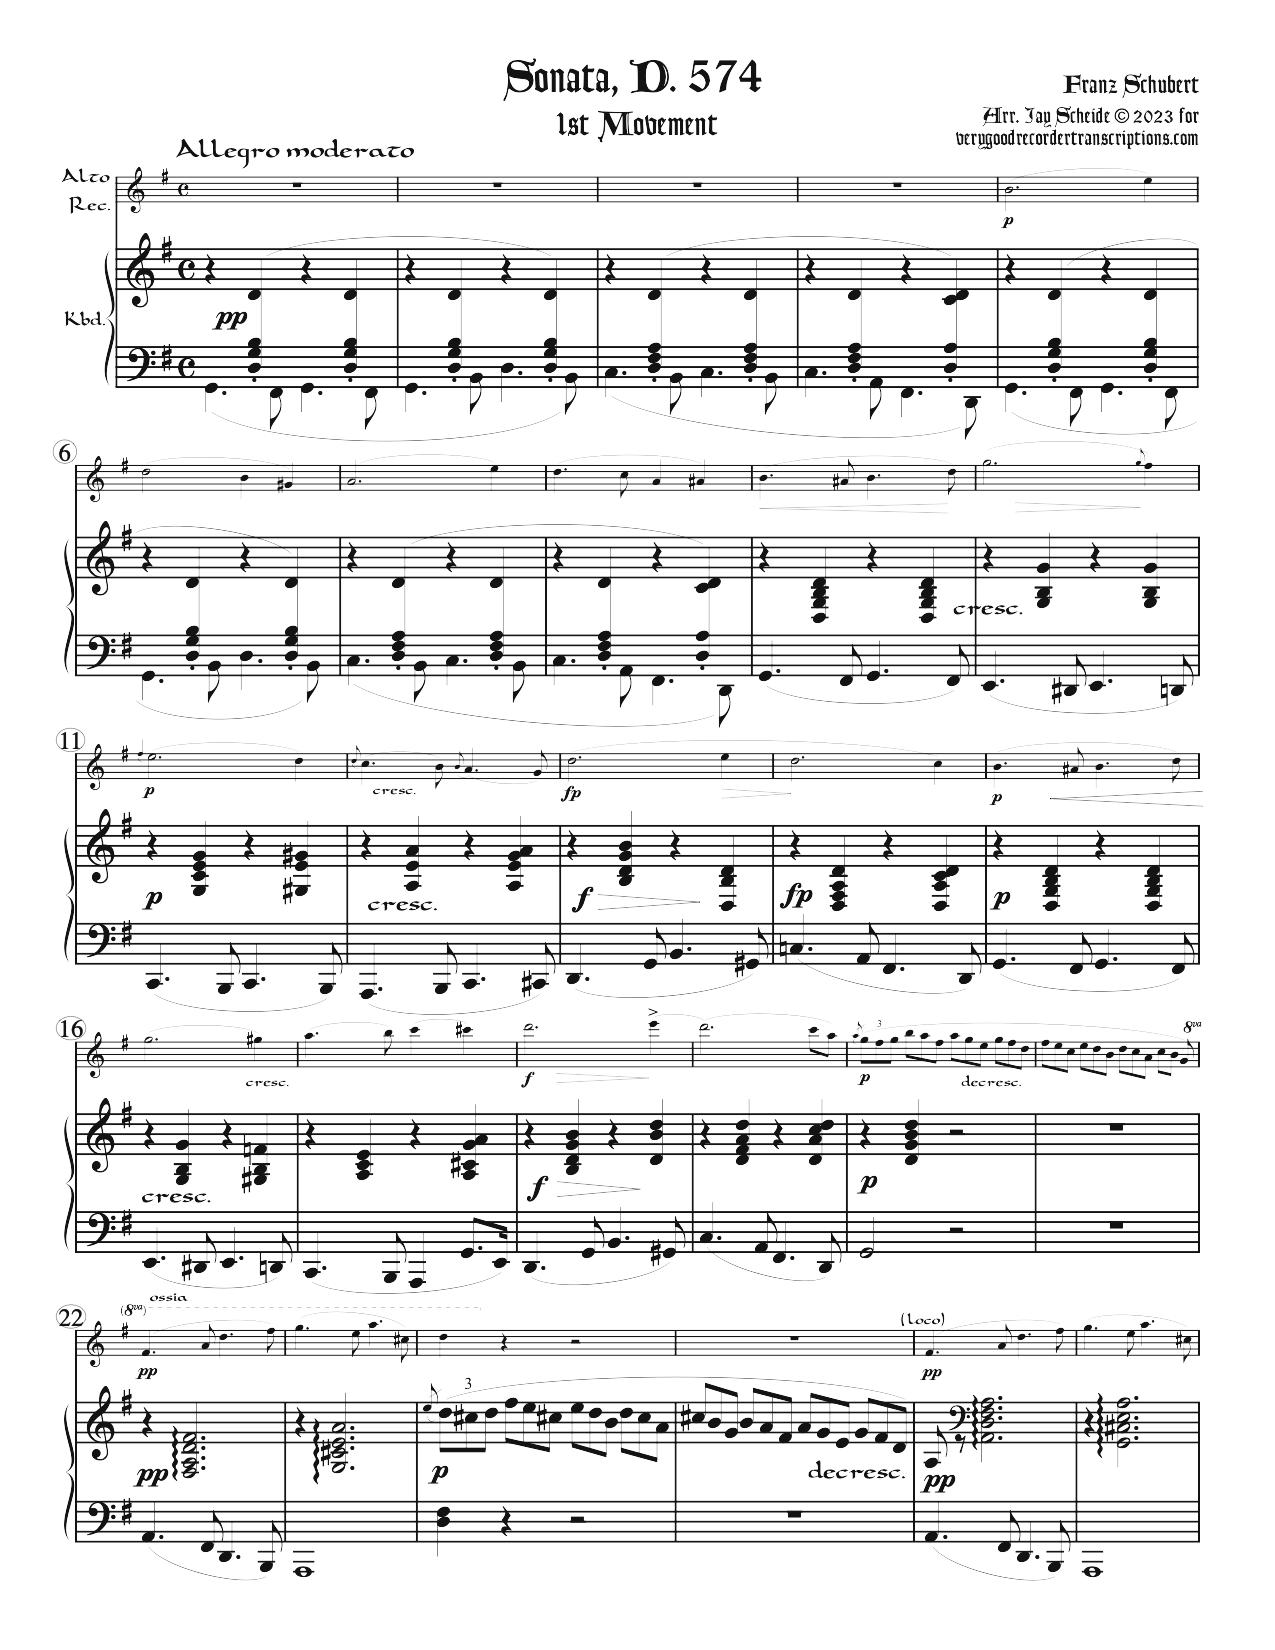 Sonata, D. 574, first mvt.